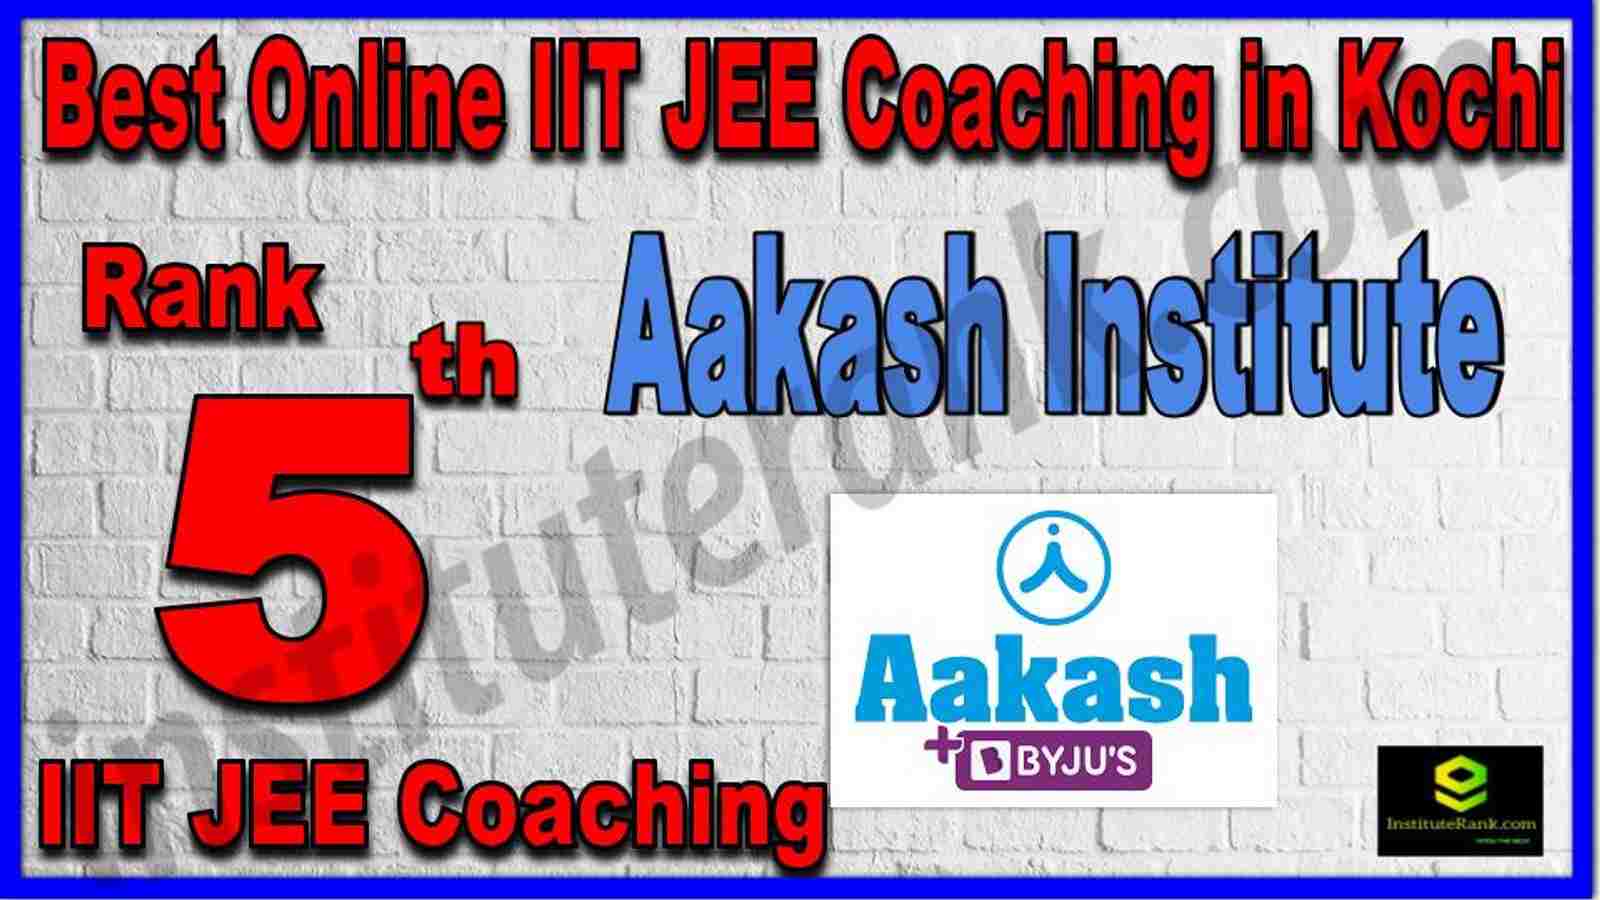 Rank 5th Best Online IIT JEE Coaching in Kochi